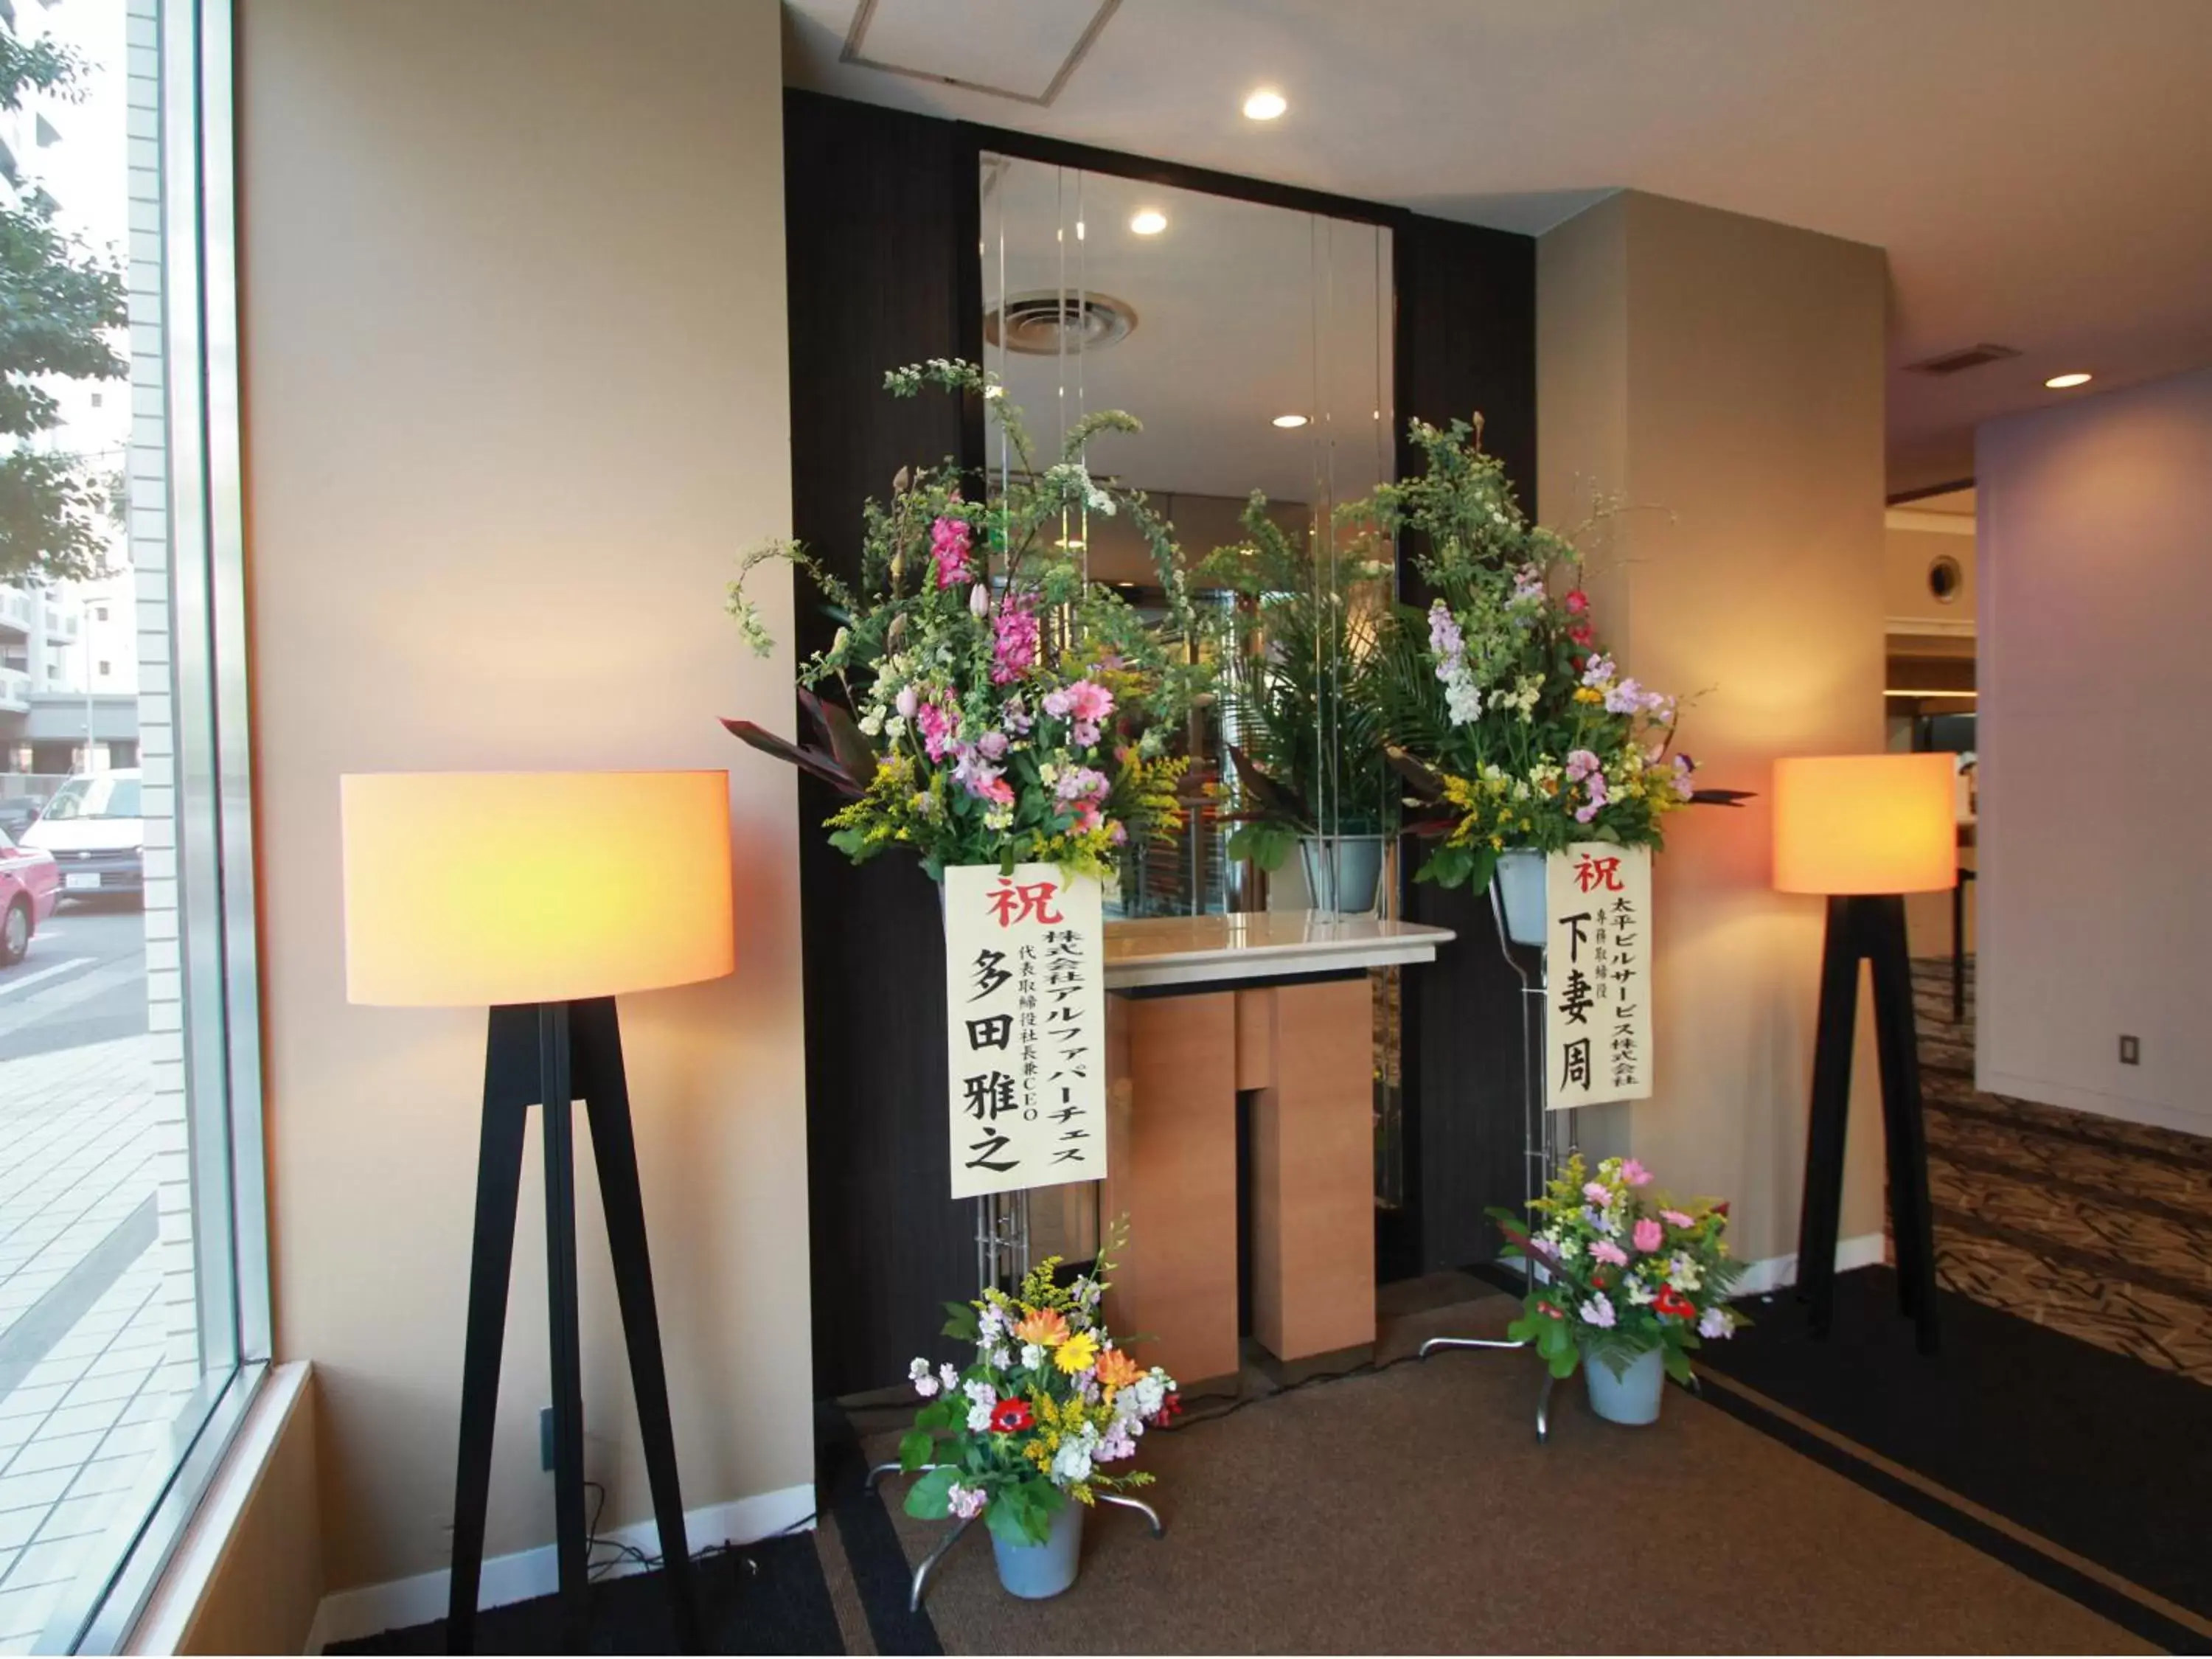 Lobby or reception, Lobby/Reception in APA Hotel Fukuoka Watanabe Dori EXCELLENT